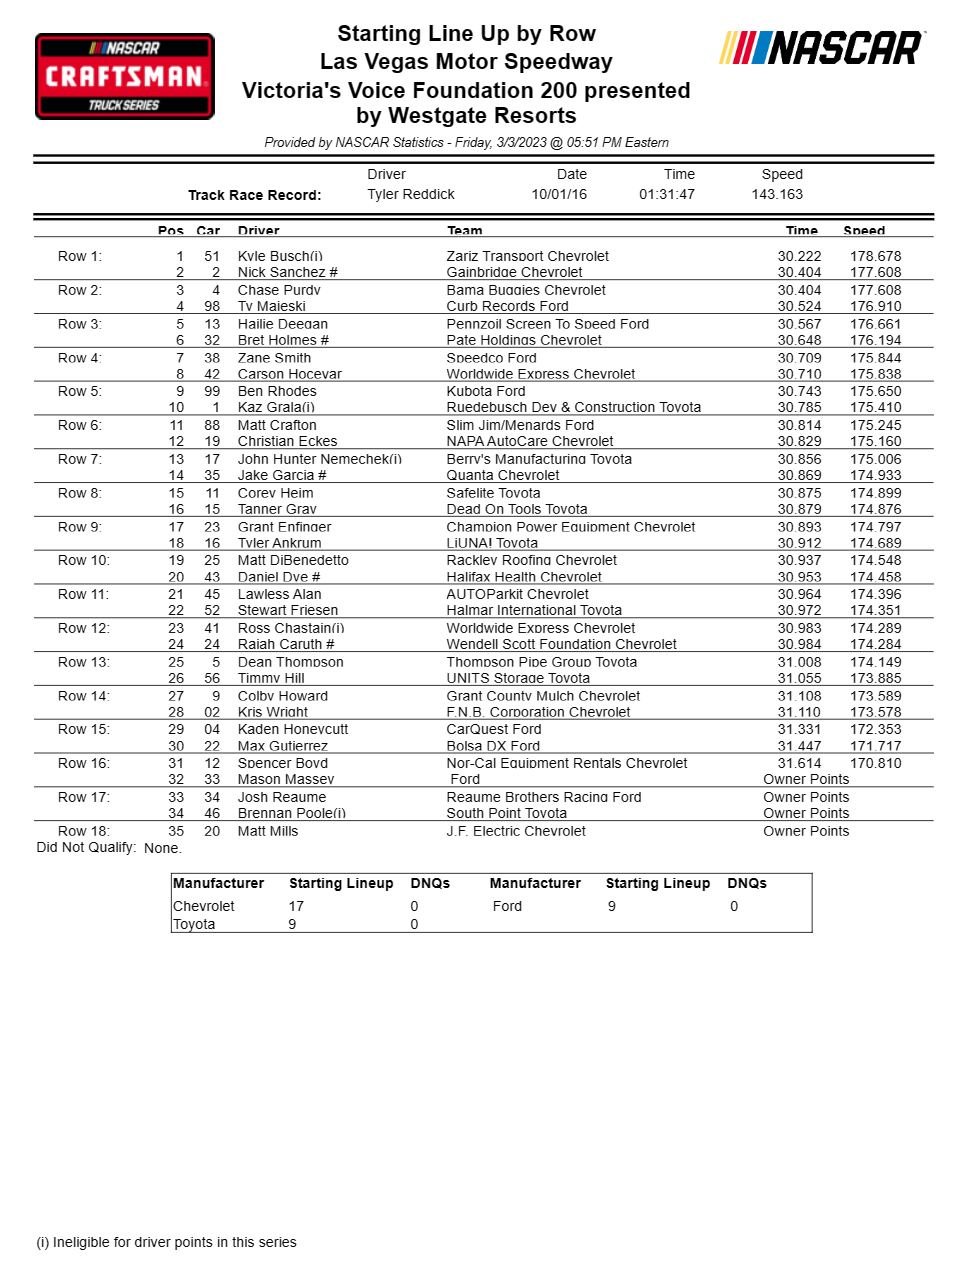 Trucks Las Vegas NASCAR Qualifying Results/ Starting Lineup